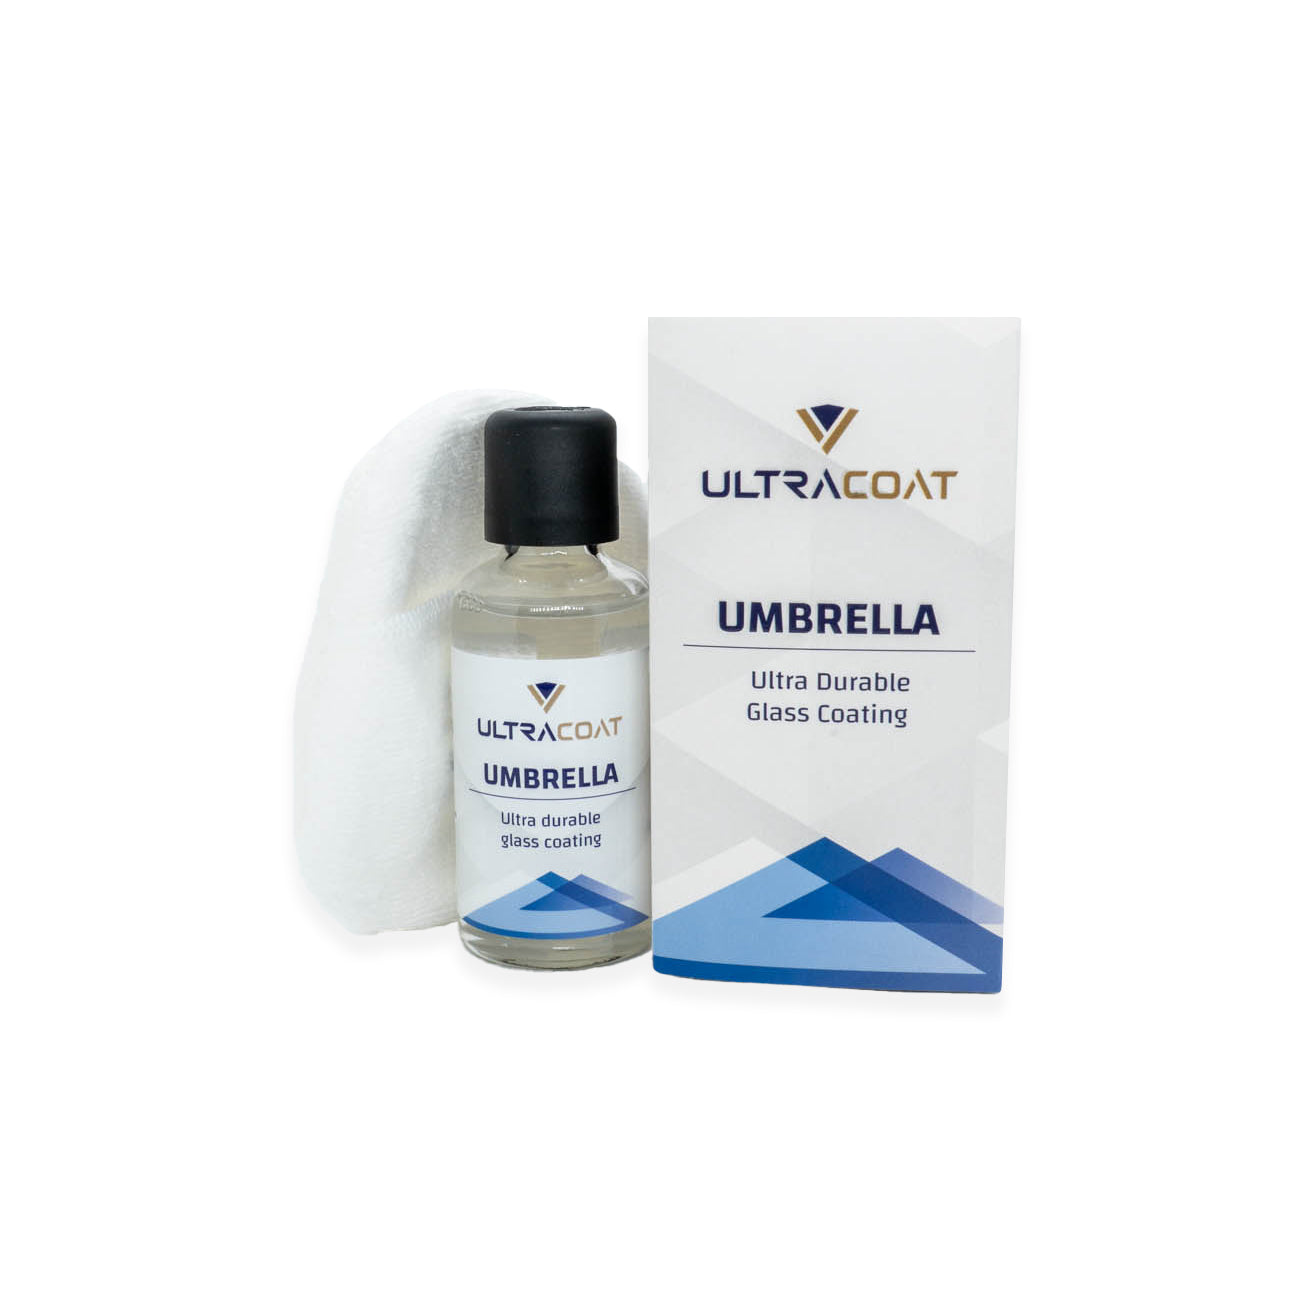 UltraCoat Umbrella - Trattamento nanotecnologico antiacqua vetri - Car-Care.it 